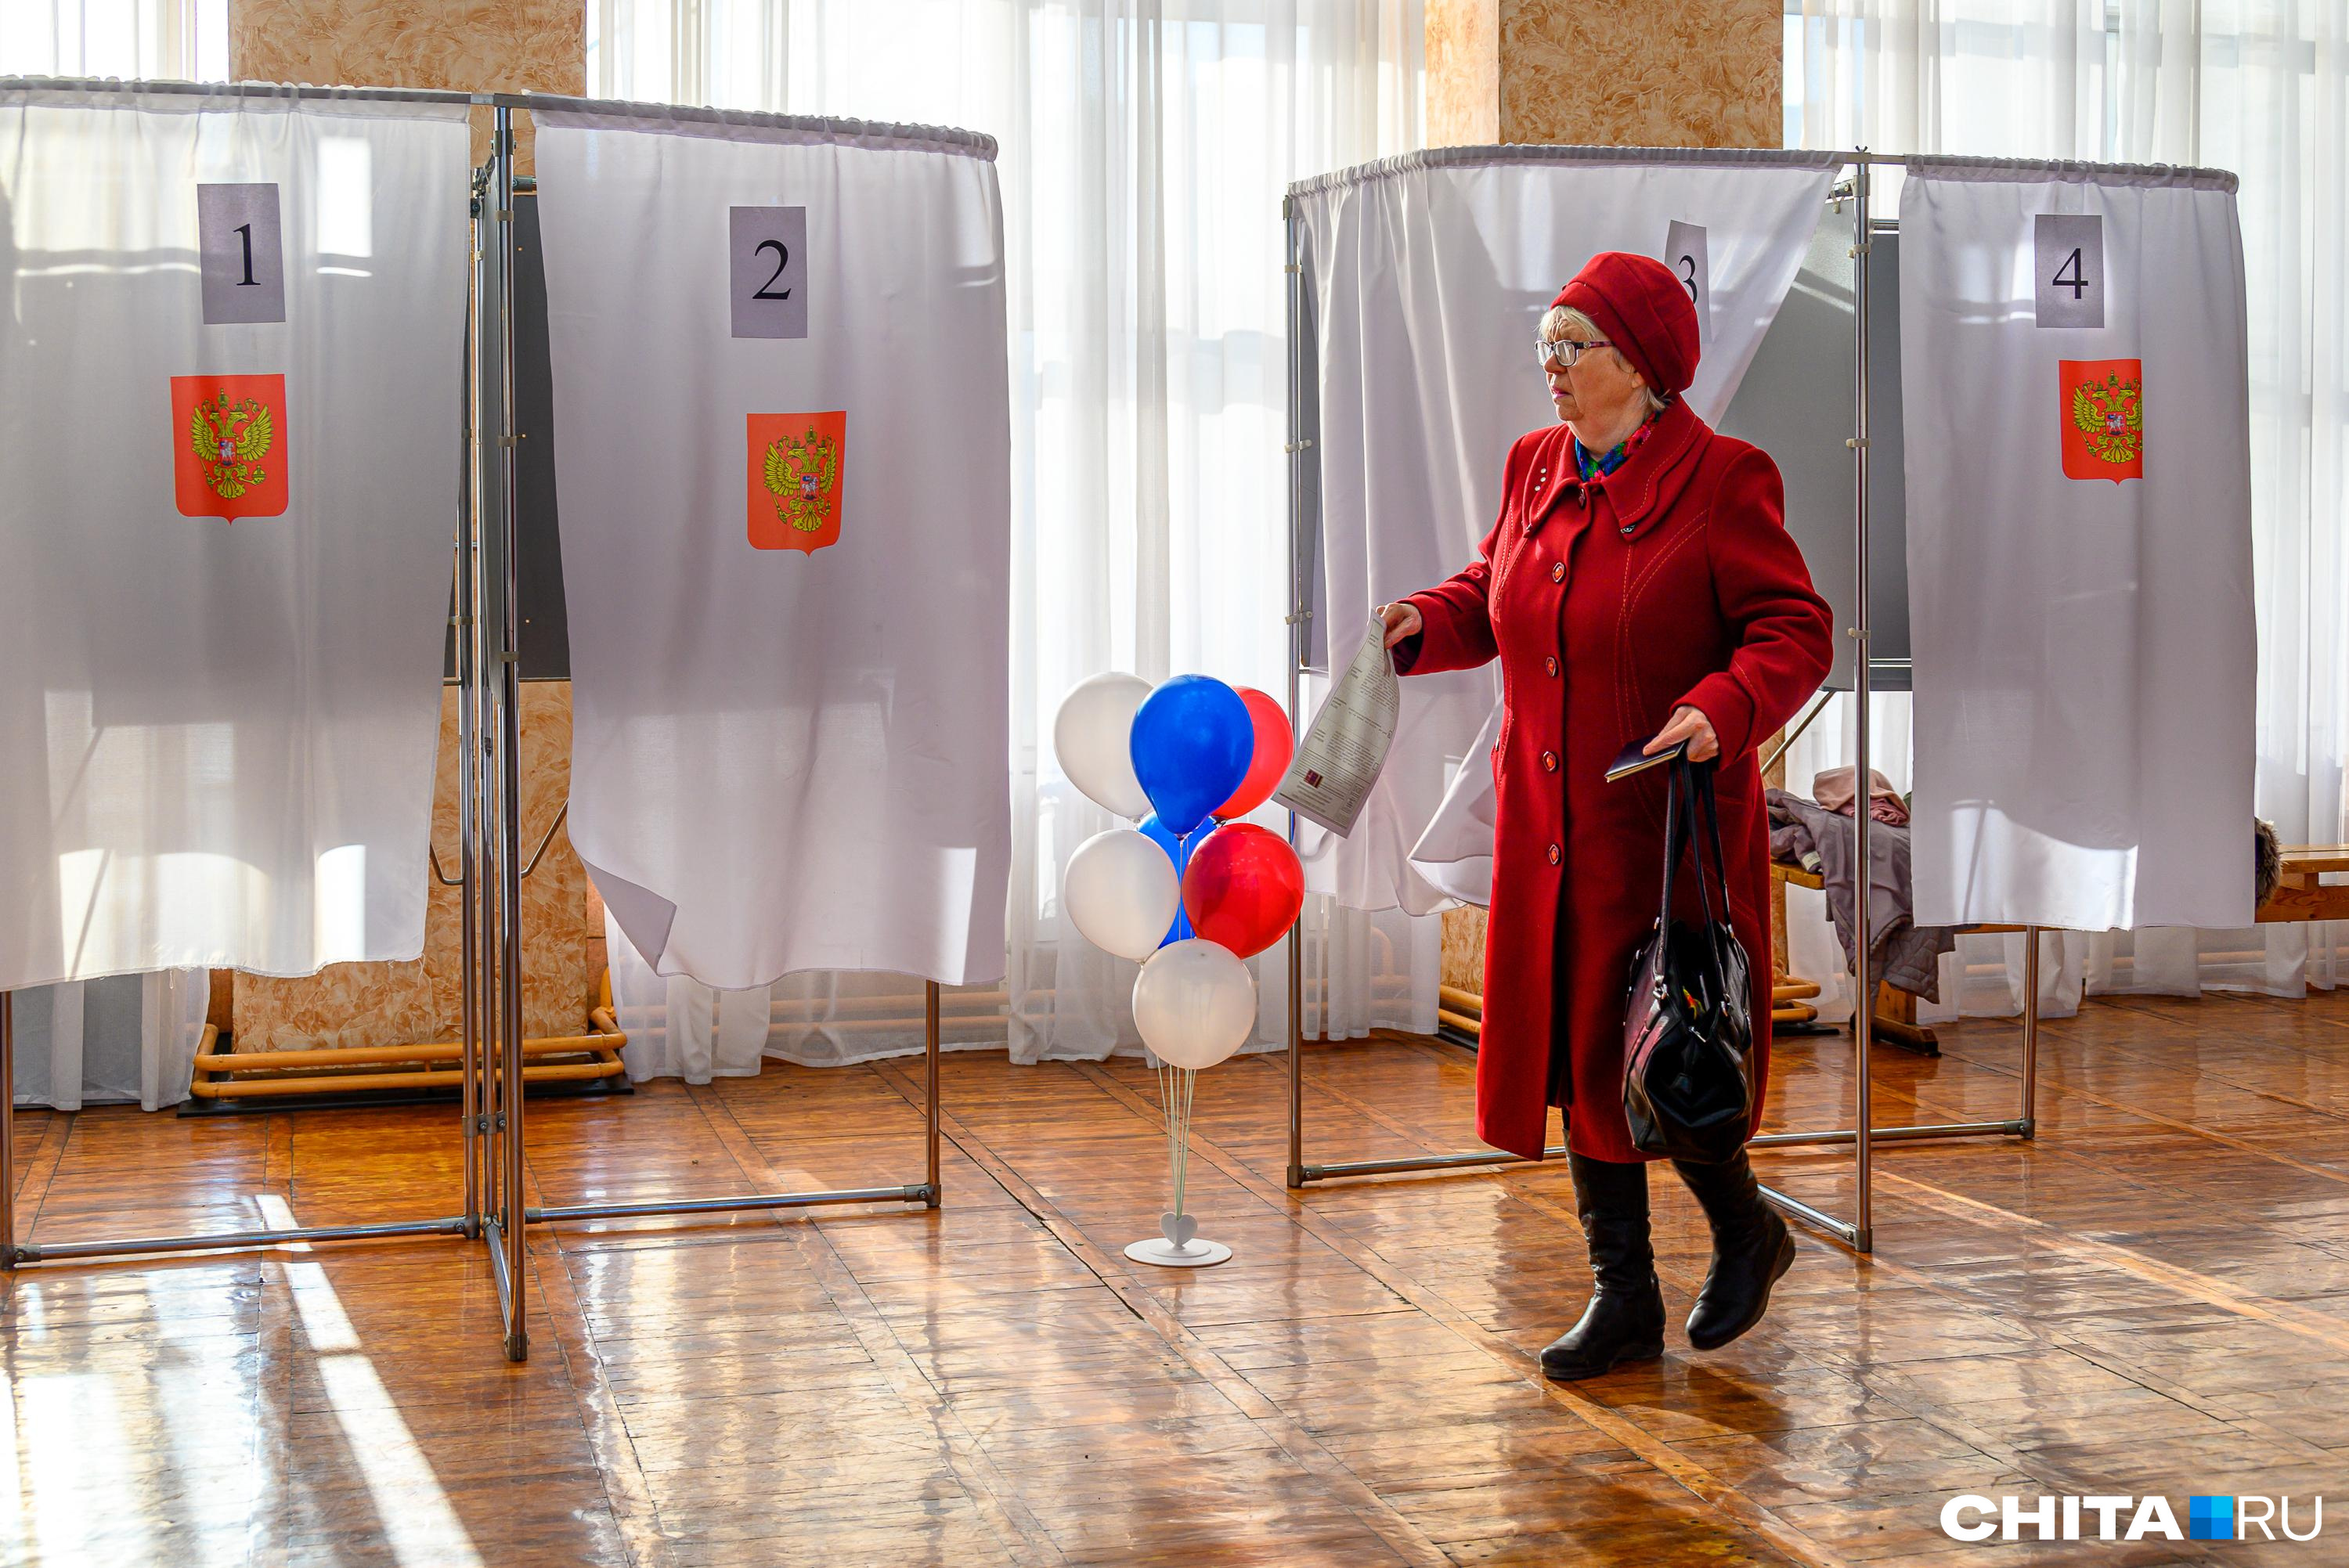 Забайкальцы начали выбирать президента. Публикуем список избирательных участков